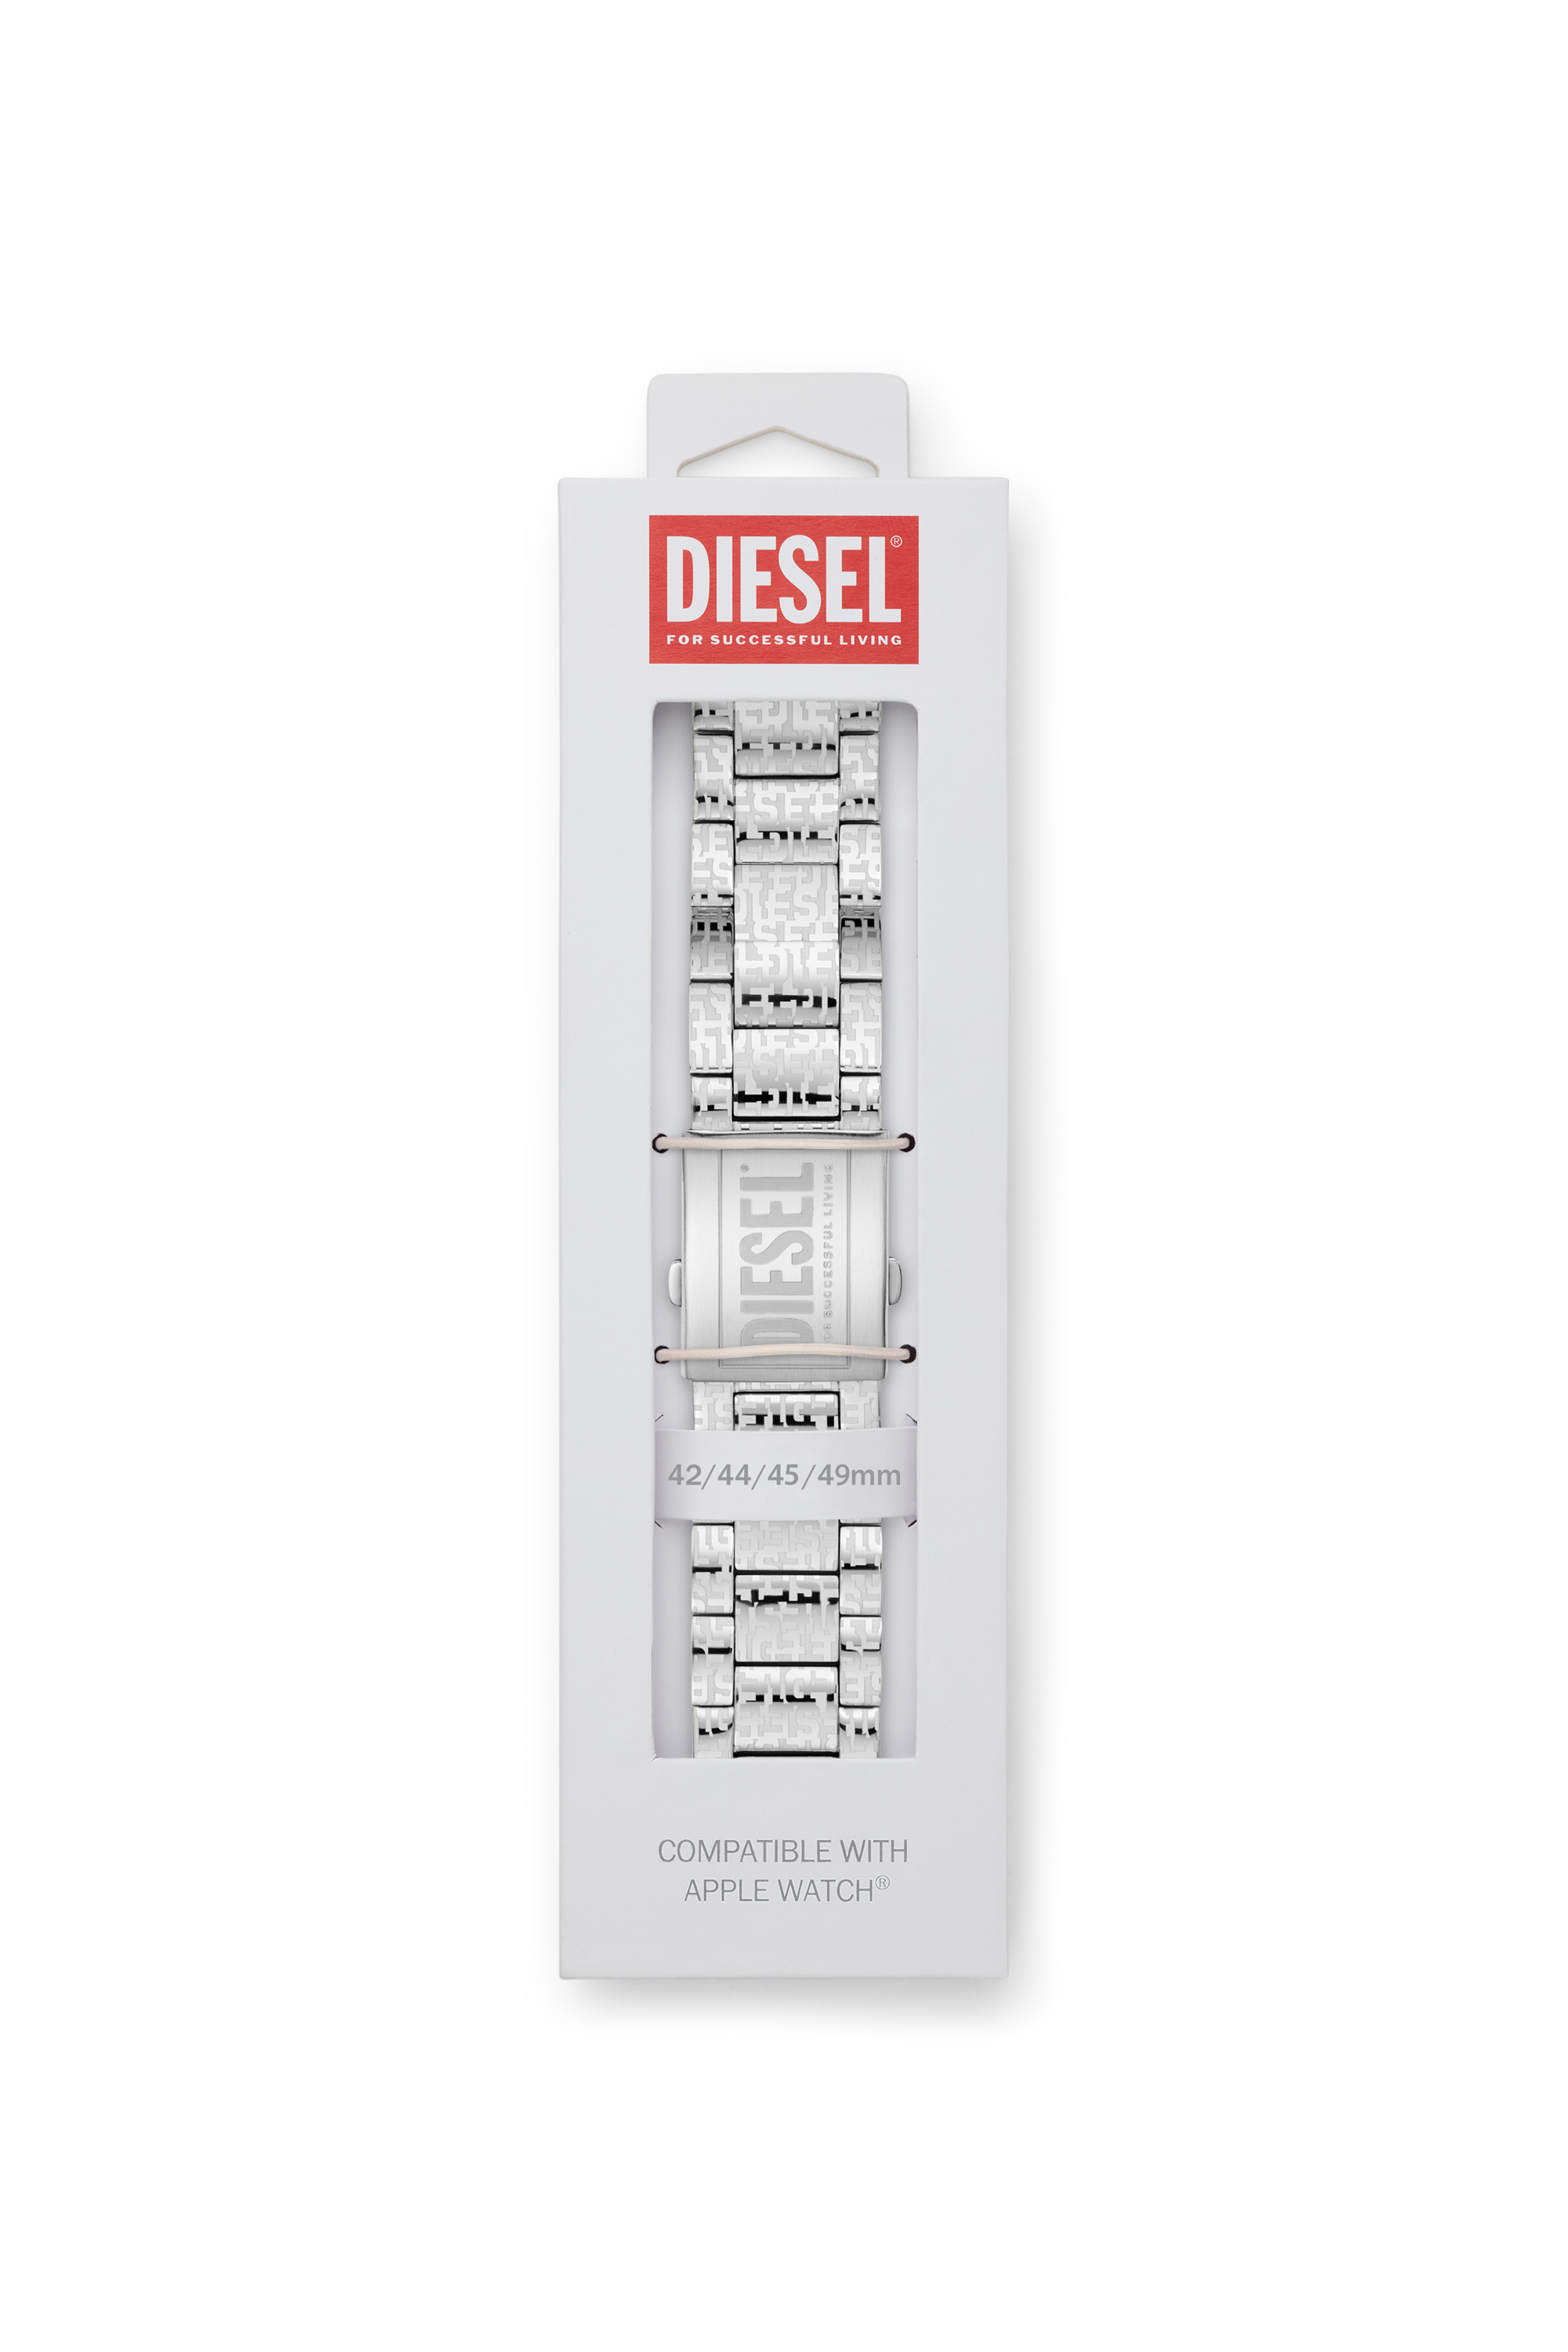 Diesel - DSS0017, Argento - Image 2